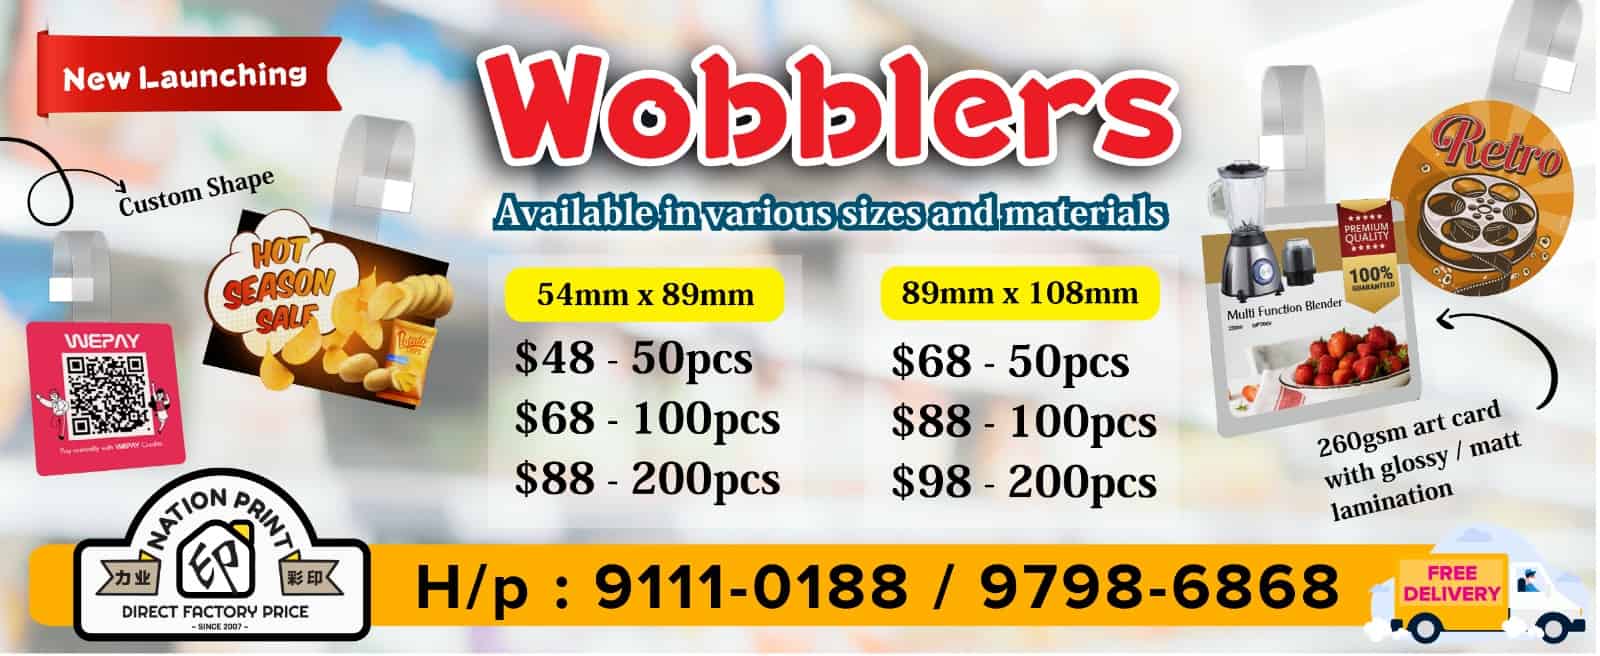 wobblers-printing